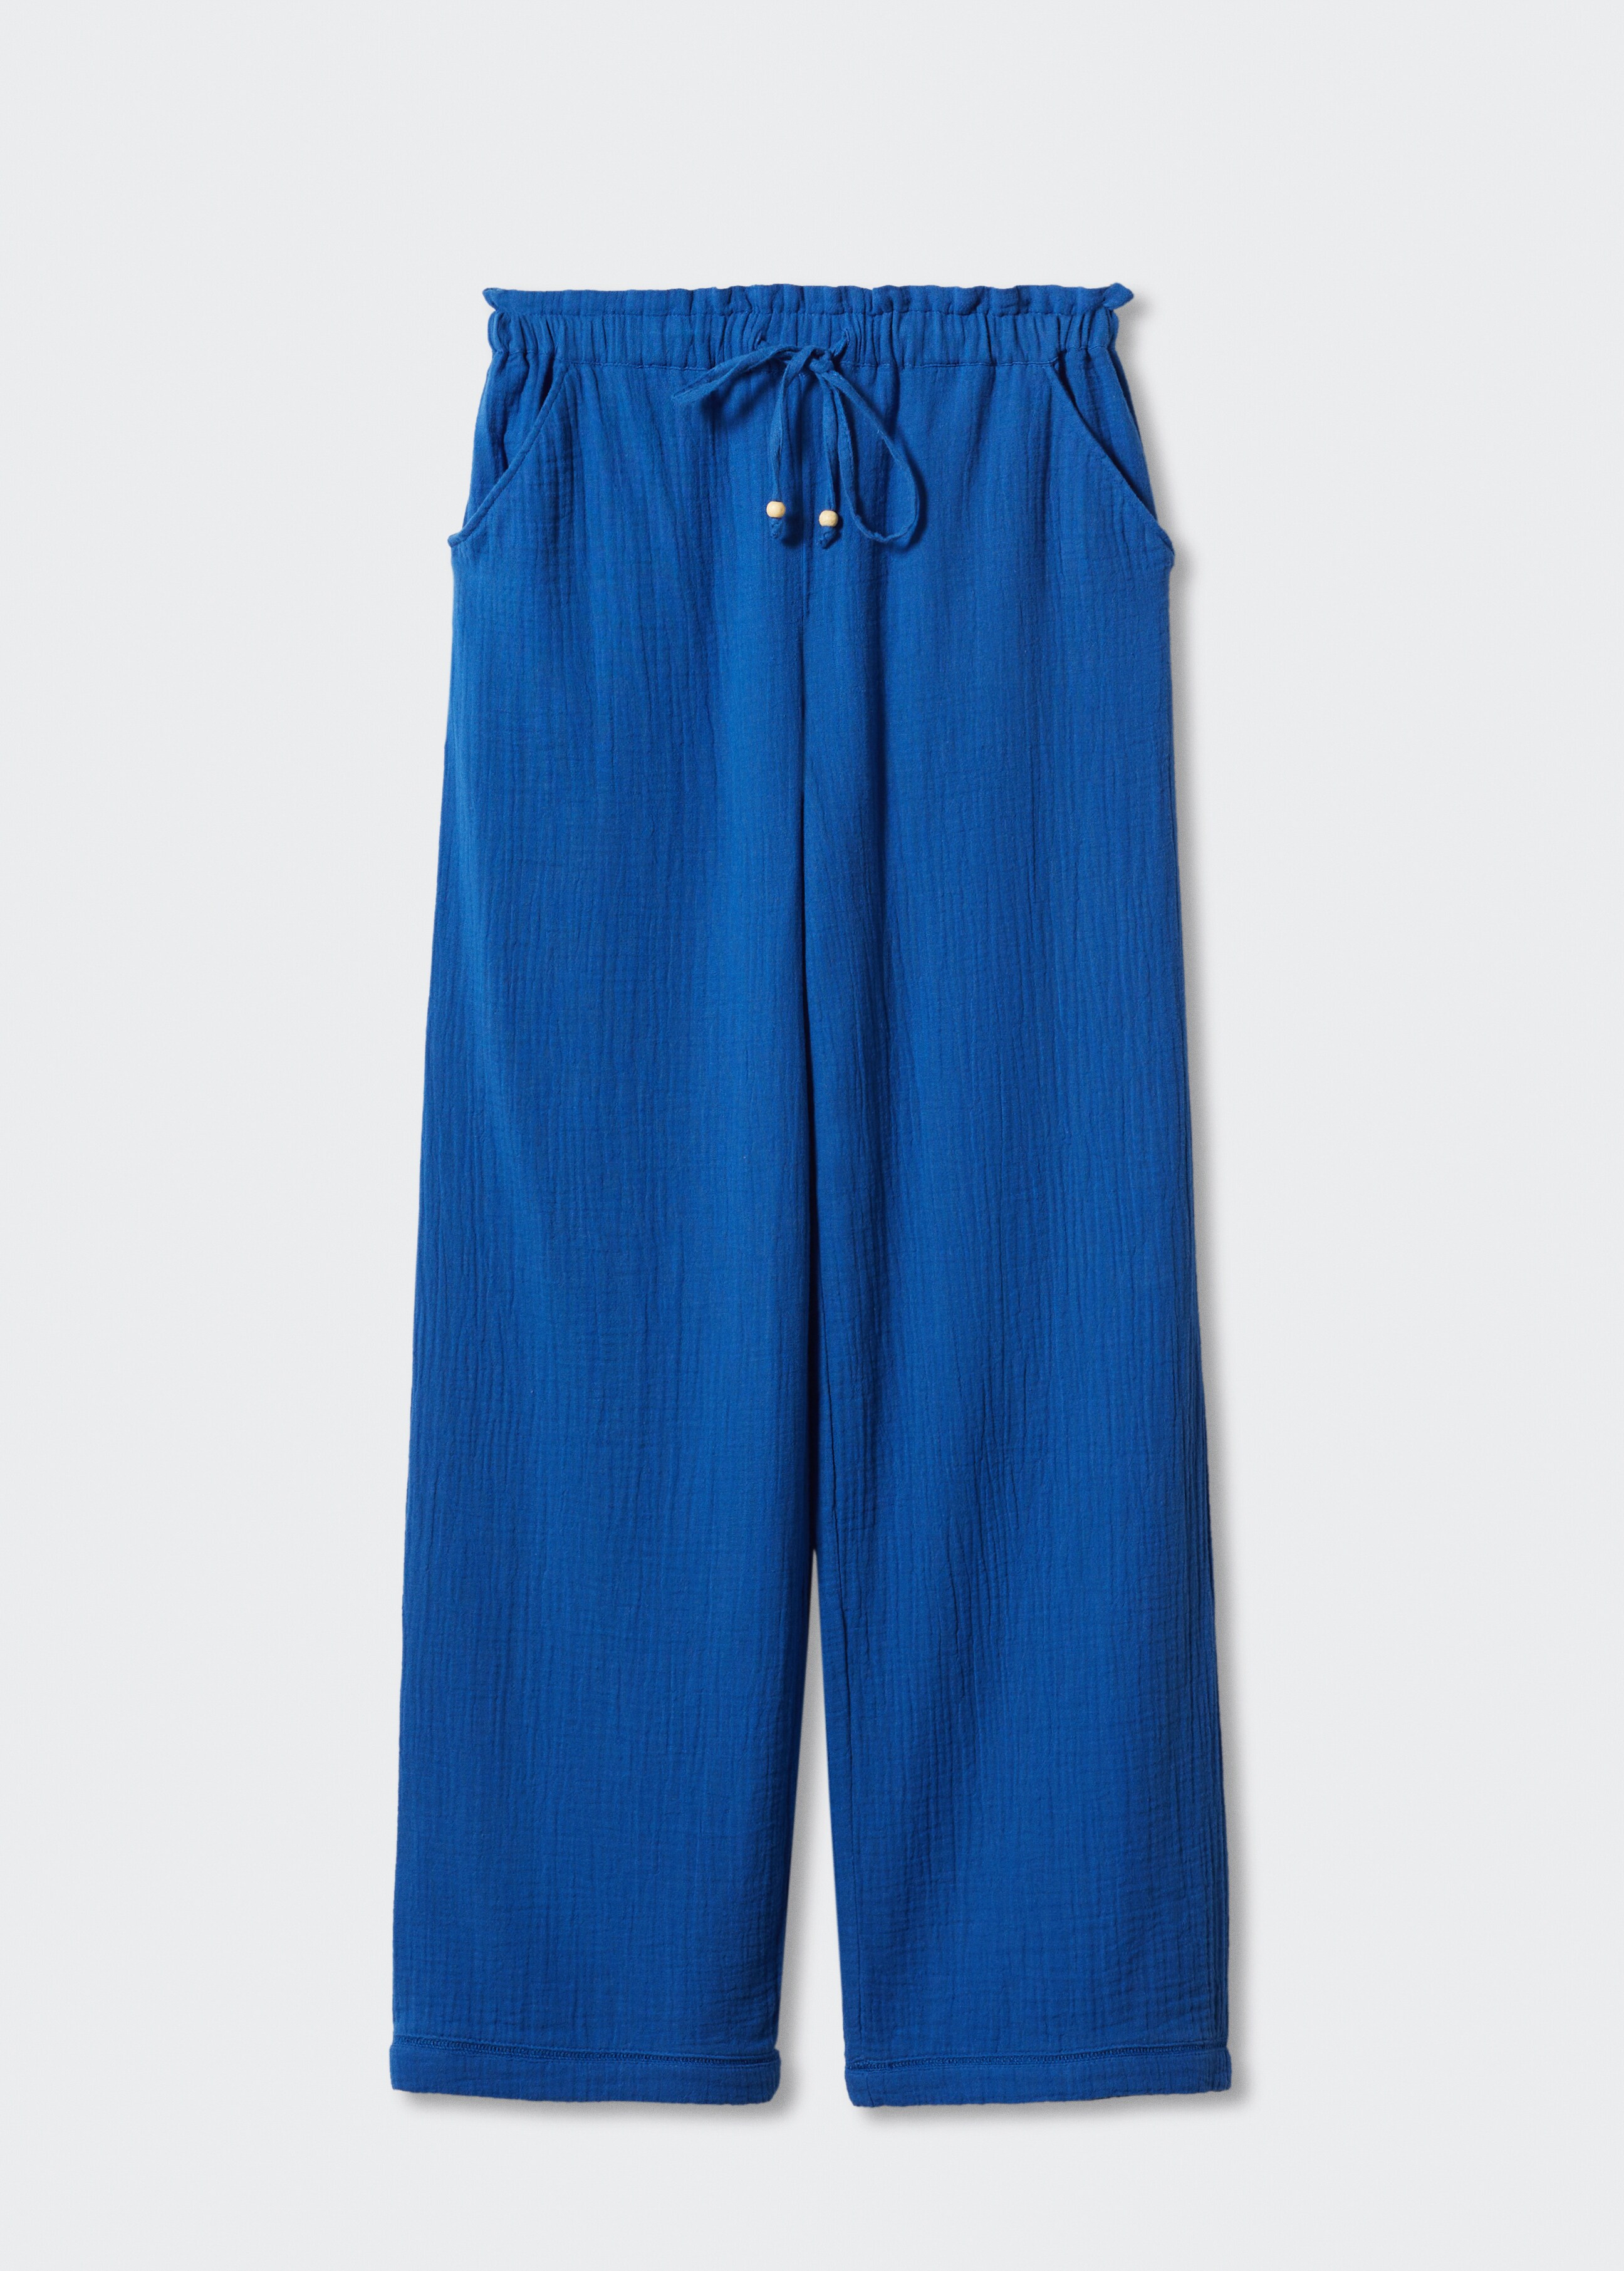 Bavlněné kalhoty s elastickým pasem - Zboží bez modelu